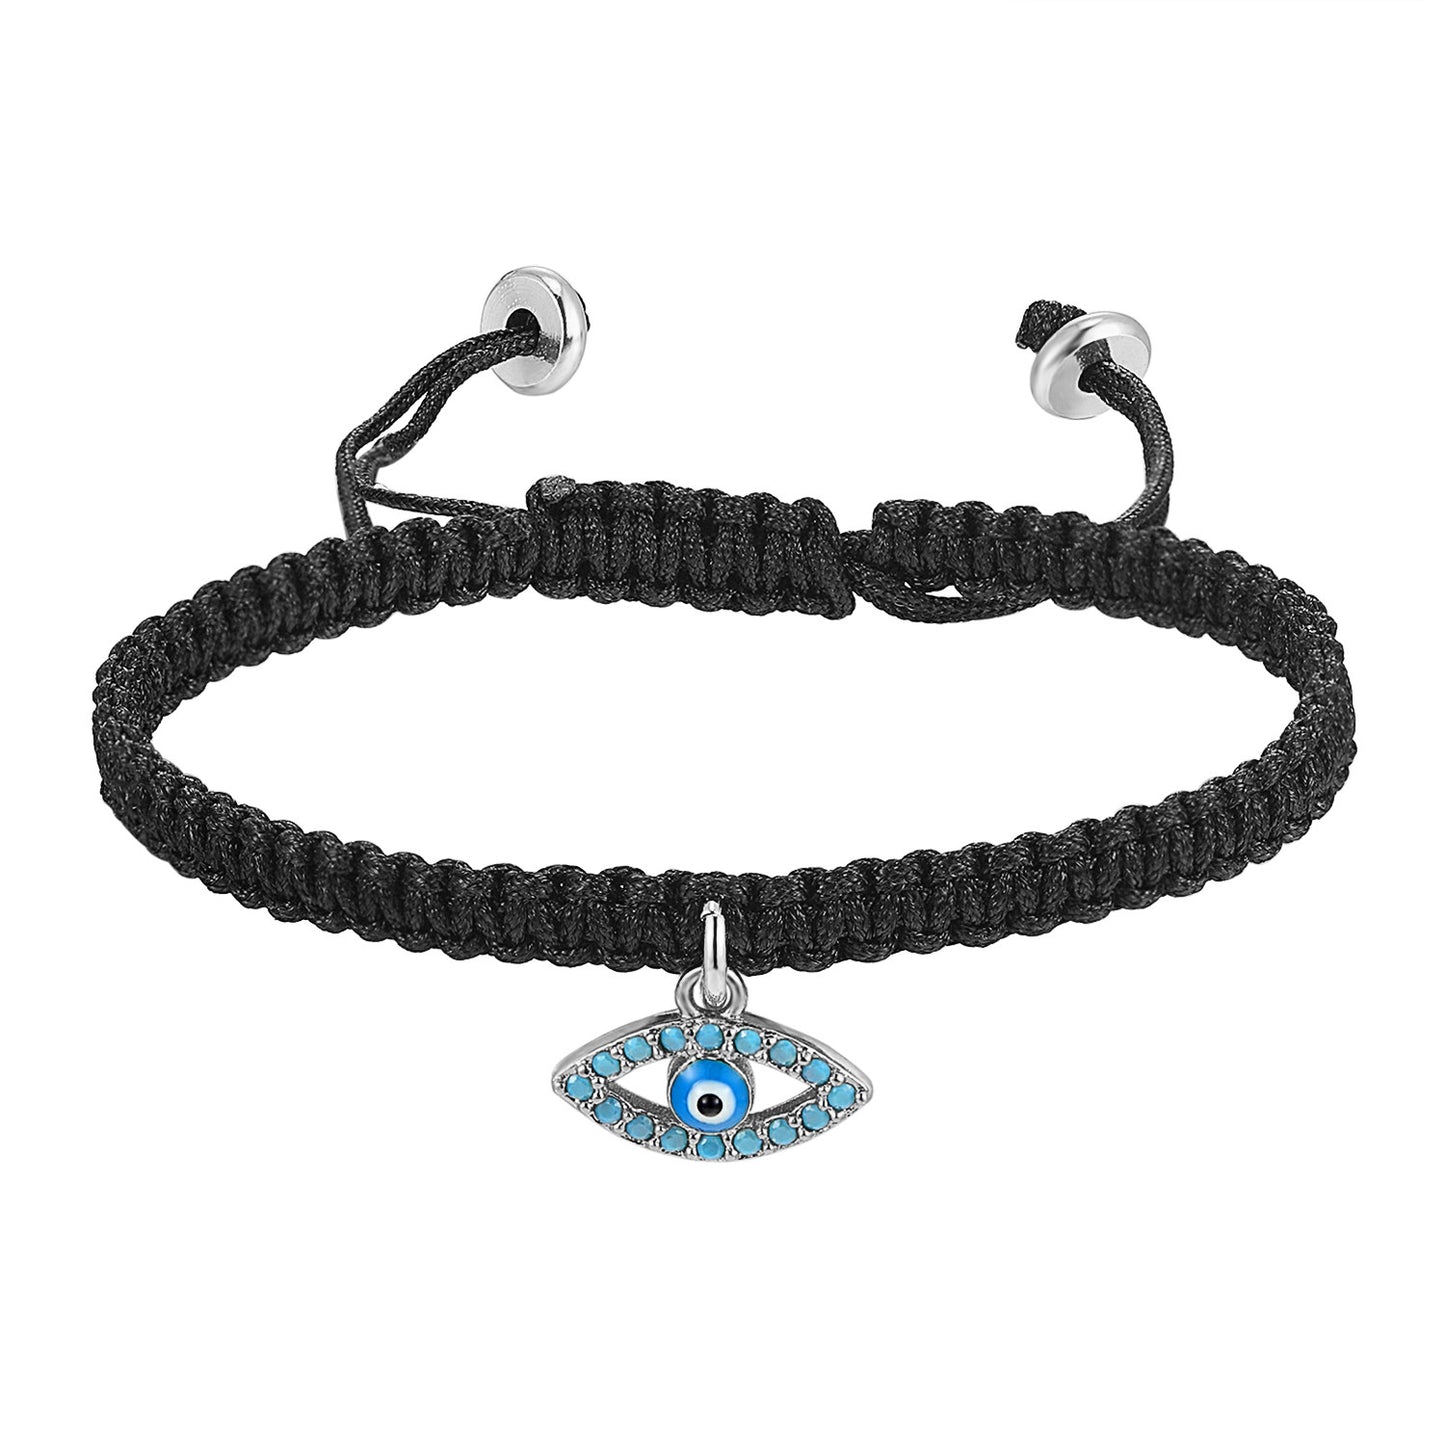 Custom Religious Evil Eye Charm Braided Black Woven Bracelet Turquoise Stones